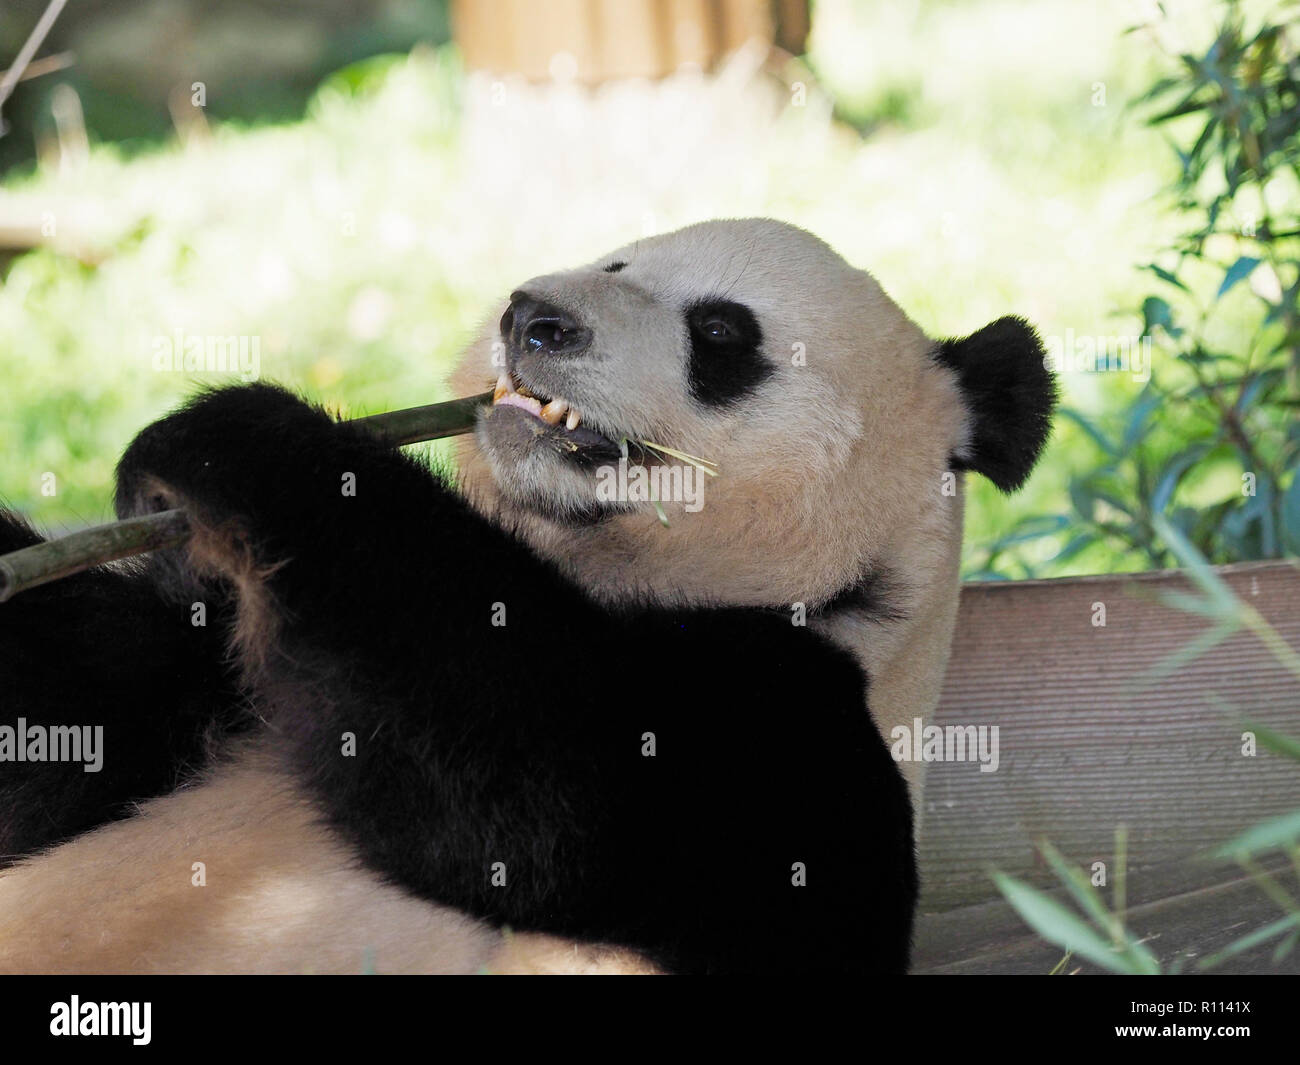 Gigantesco orso panda sdraiato mentre mangiando bambù, lo zoo di Rhenen, Paesi Bassi. Panda orsi sono molto rare in giardini zoologici al di fuori della Cina, a causa della loro speciale di Foto Stock